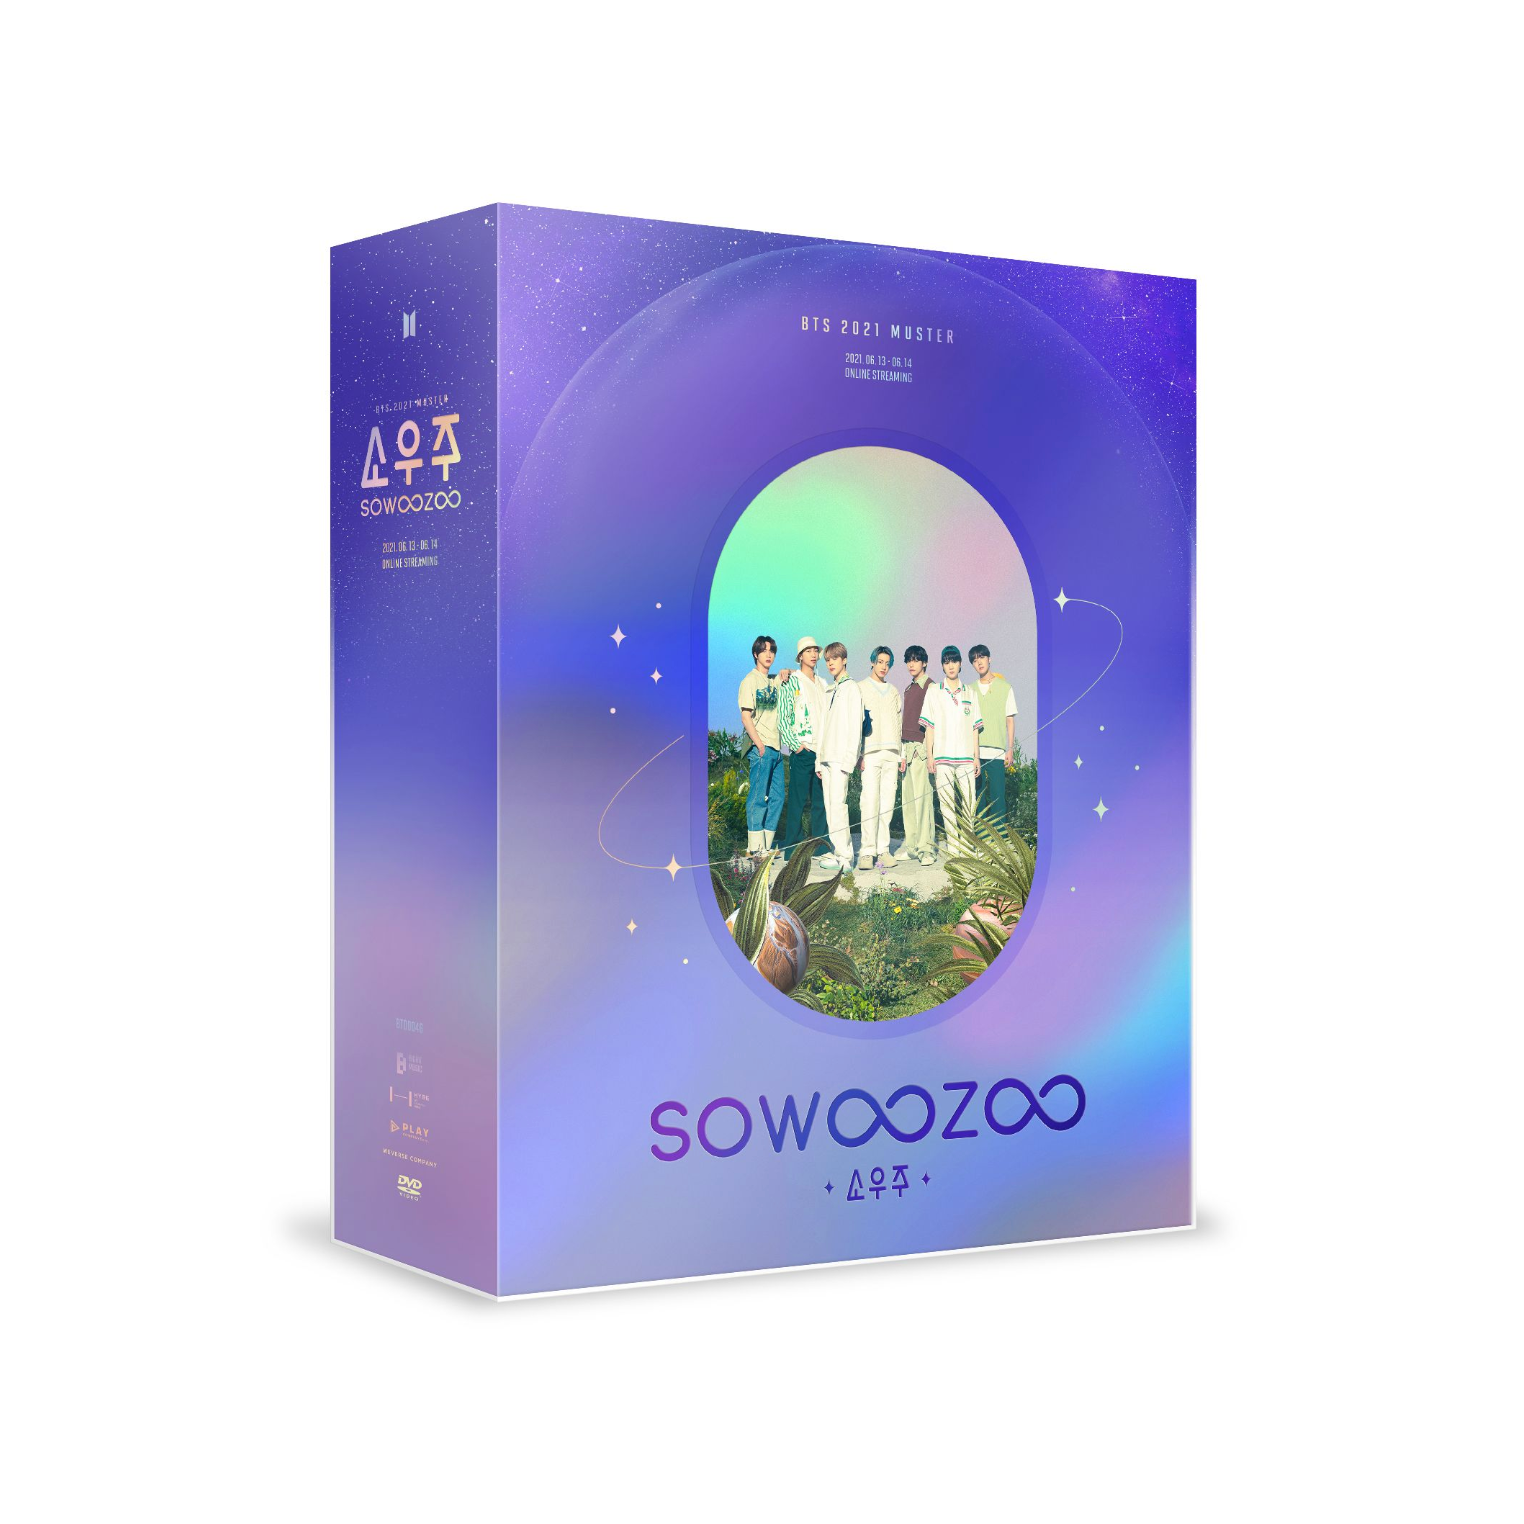 DVD] BTS 2021 MUSTER: SOWOOZOO — US BTS ARMY